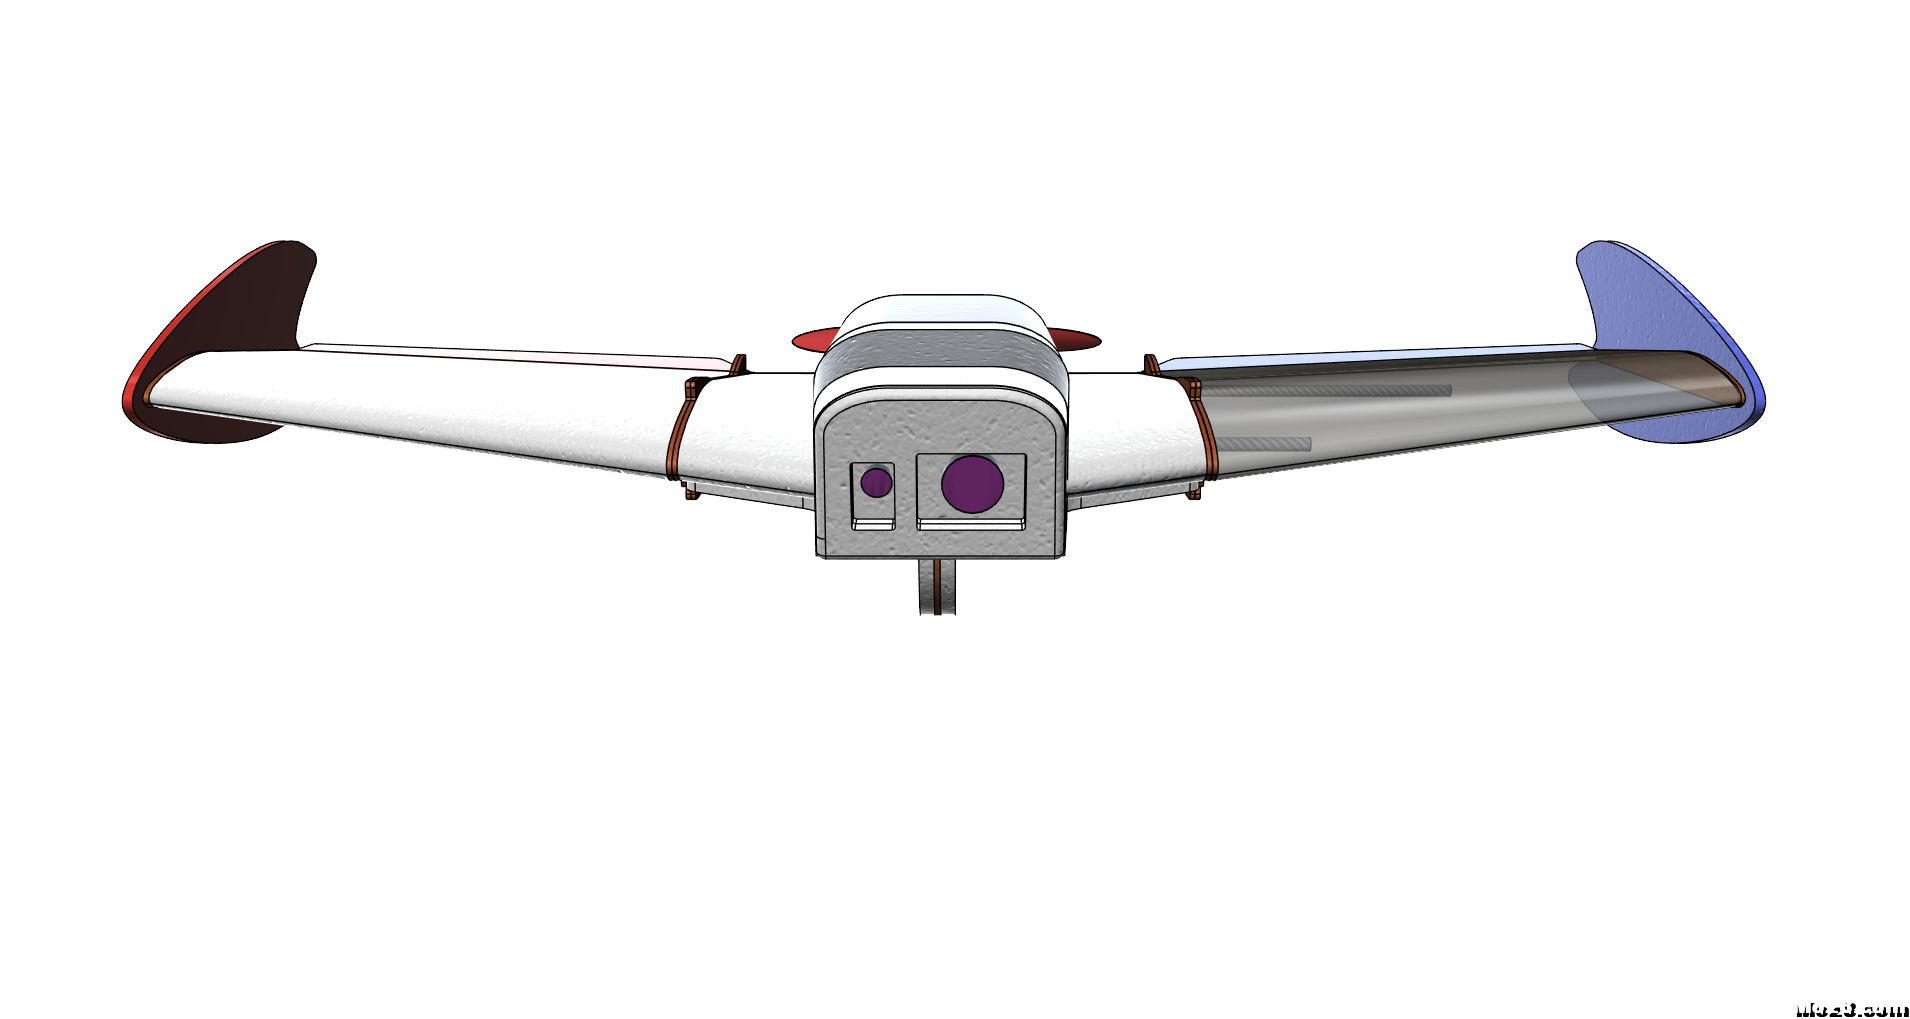 Laputa-780-II，继续改进PP板飞翼（附试炸视频） 电池,飞控,飞翼,hirm飞翼,消失的飞翼 作者:peter33 9321 